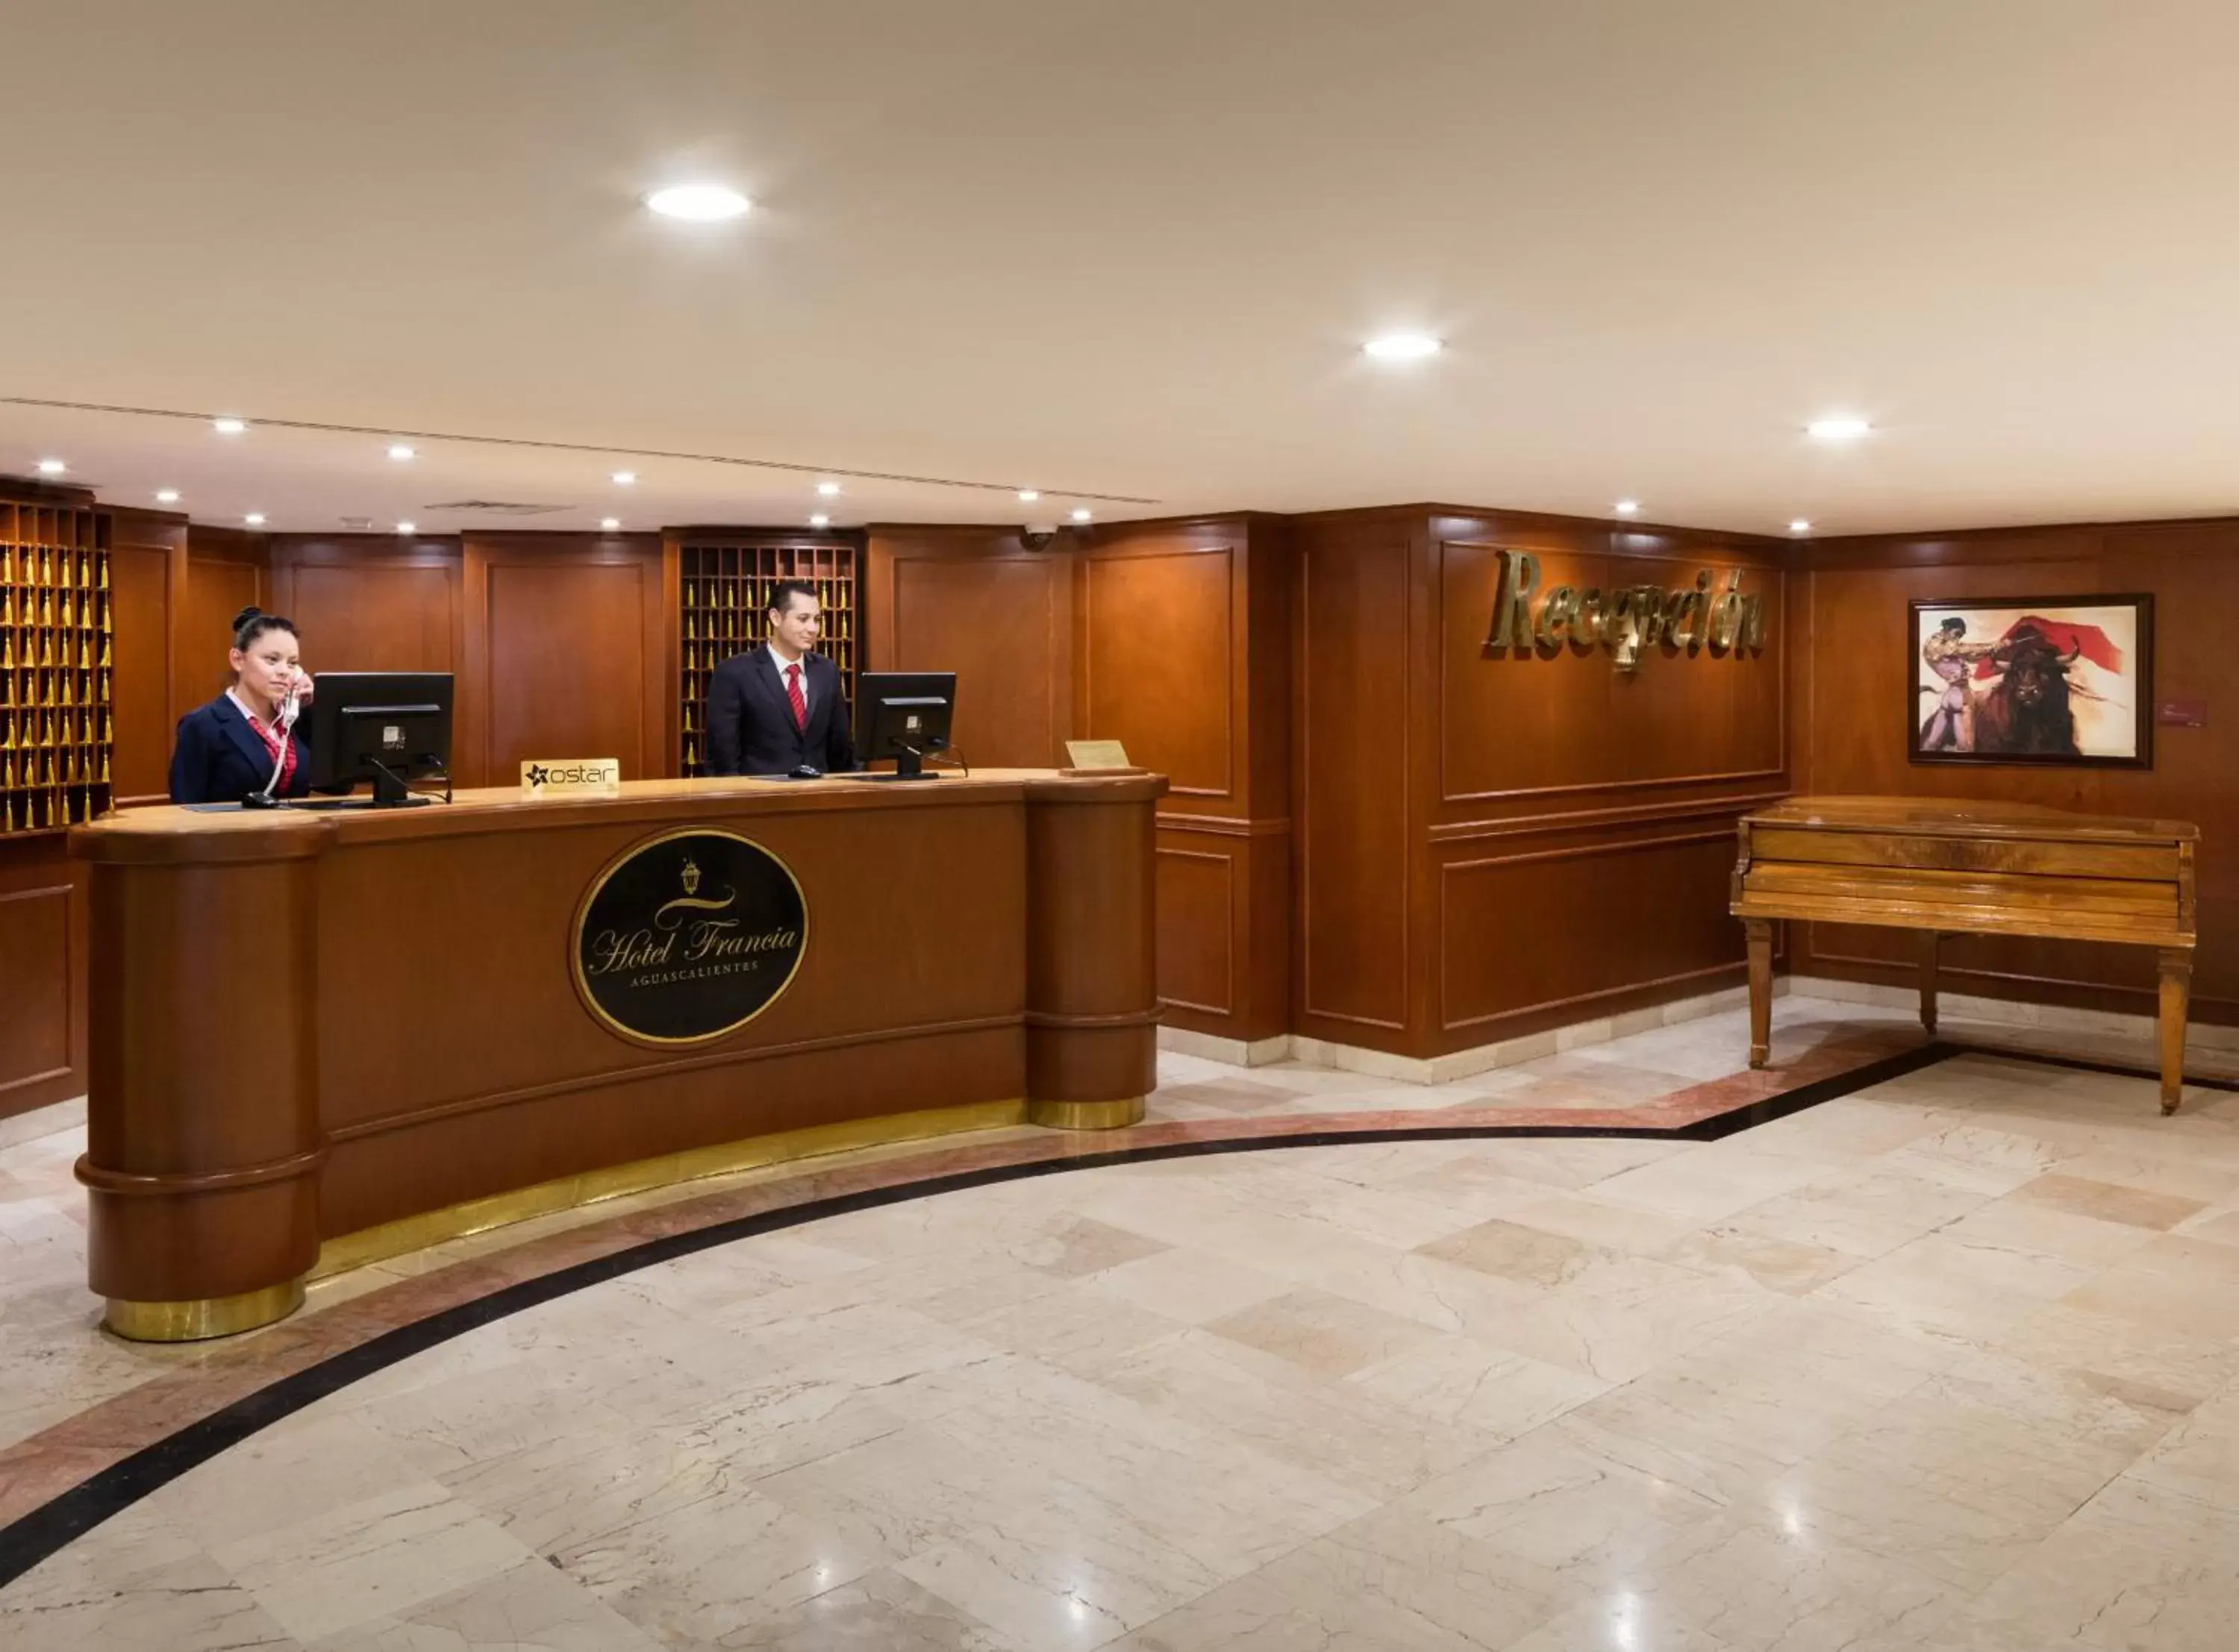 Lobby or reception, Lobby/Reception in Hotel Francia Aguascalientes